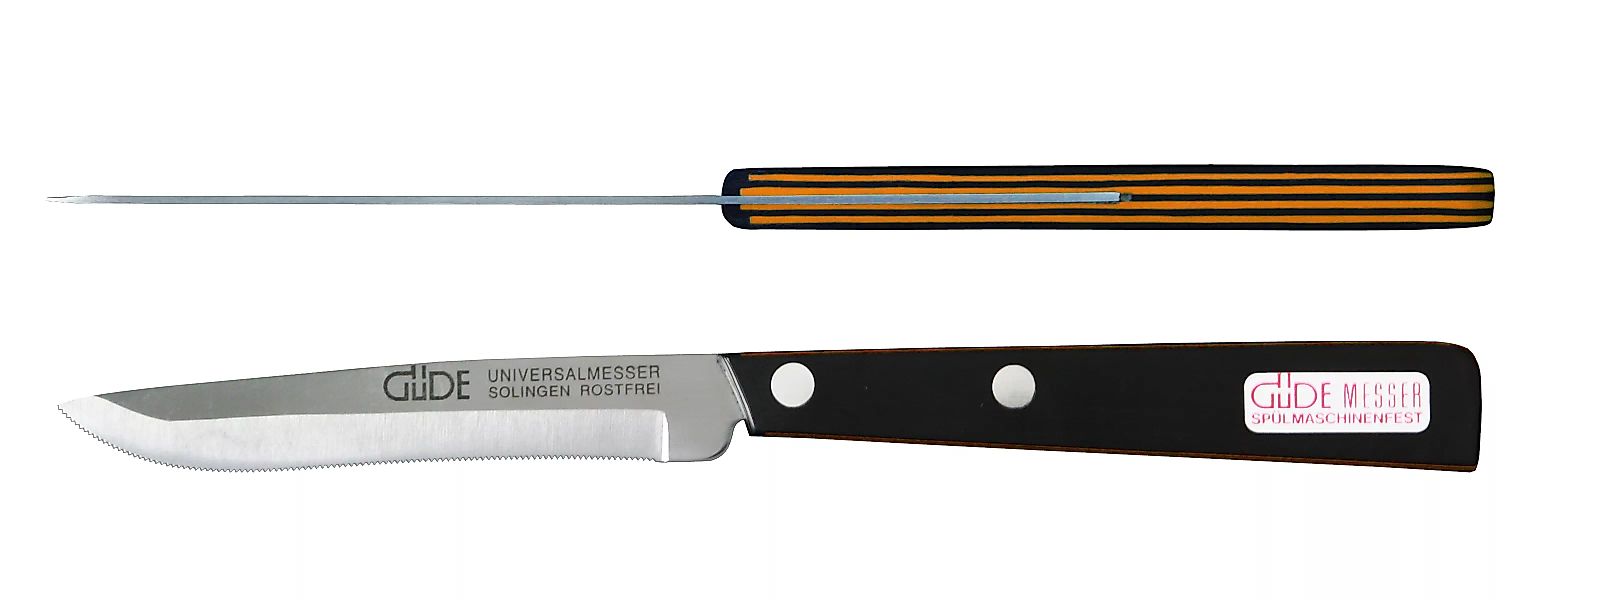 Güde Universalmesser 10 cm - Edelstahl - schwarz-orangenem Griff günstig online kaufen